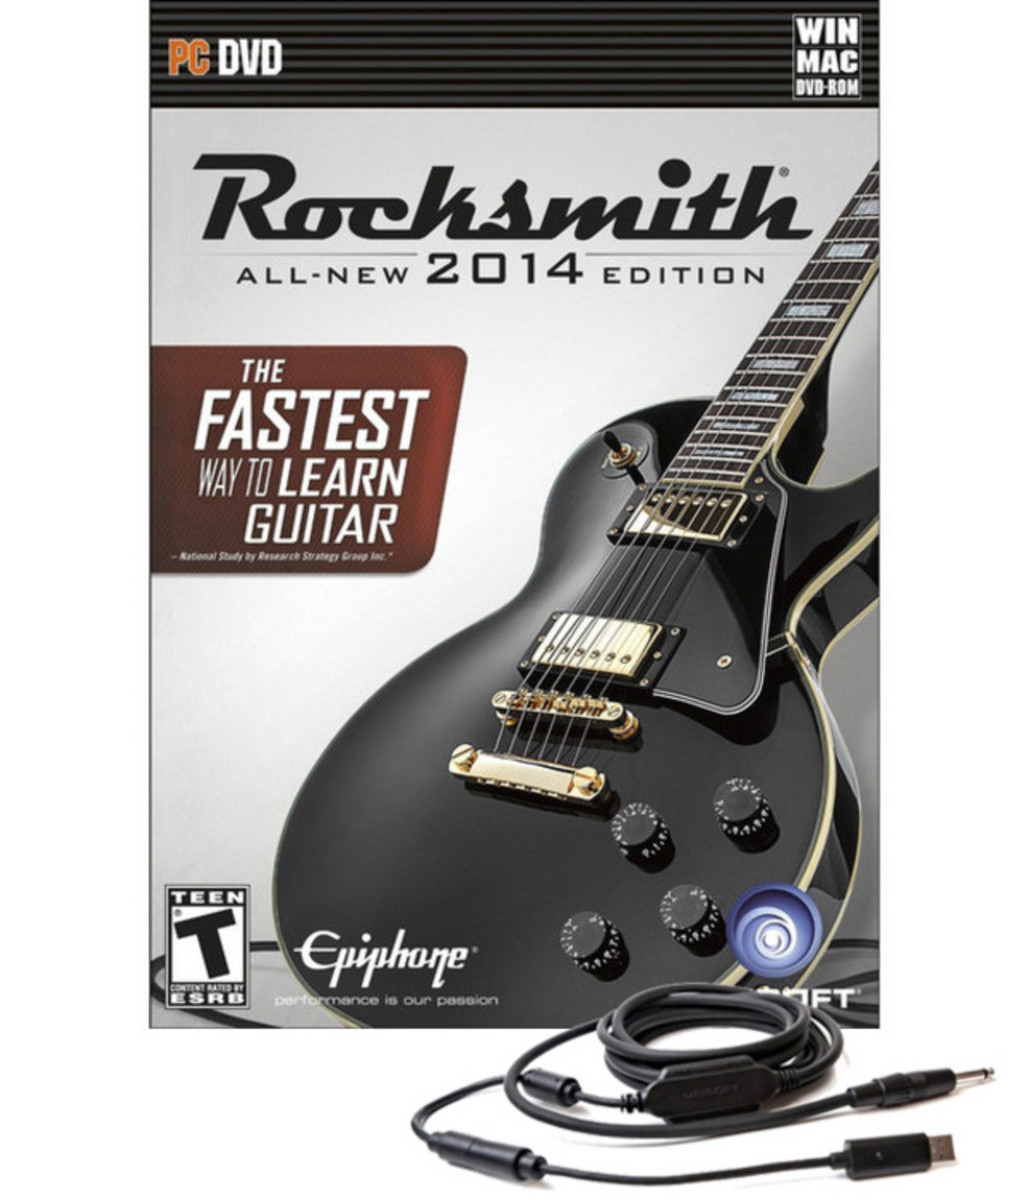 Rocksmith 2014 mac download free. full version